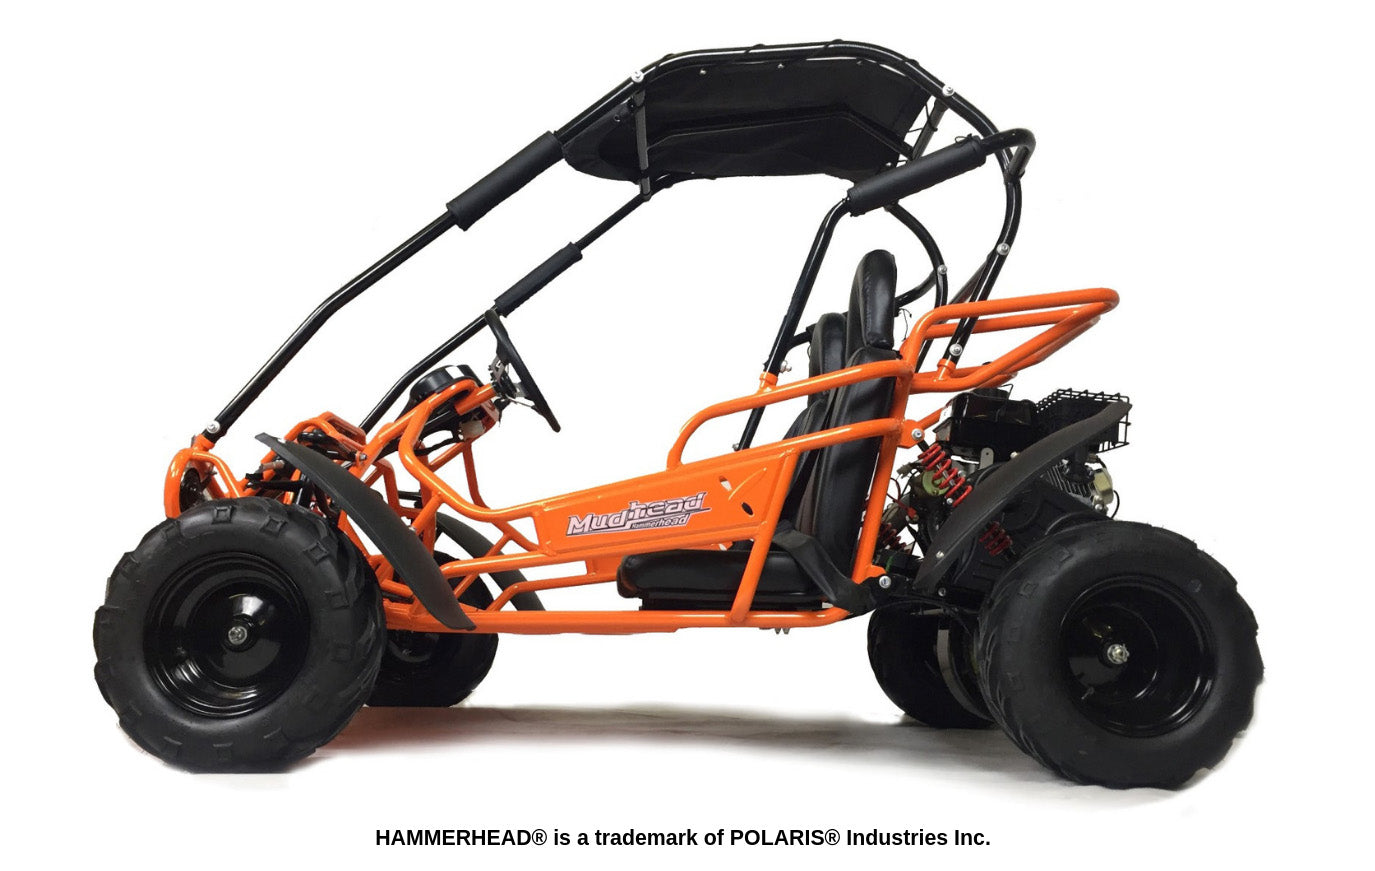 hammerhead-mudhead-reverse-208r-kids-off-road-buggy-orange-side-view